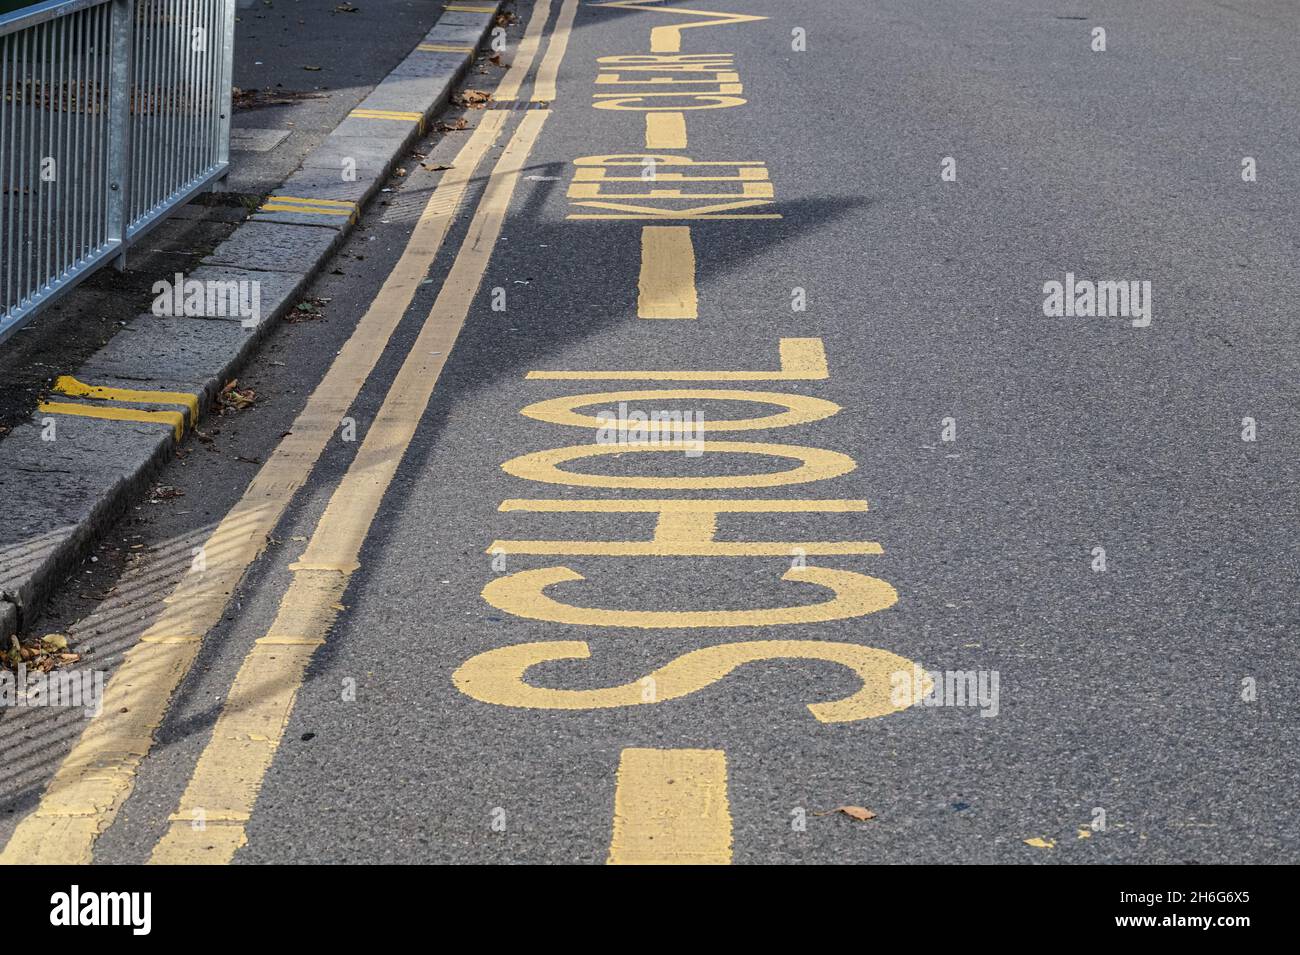 Escuela Mantenga las marcas claras en la calle para mantener el espacio fuera de las escuelas libre de vehículos estacionados, Londres Inglaterra Reino Unido Reino Unido Foto de stock